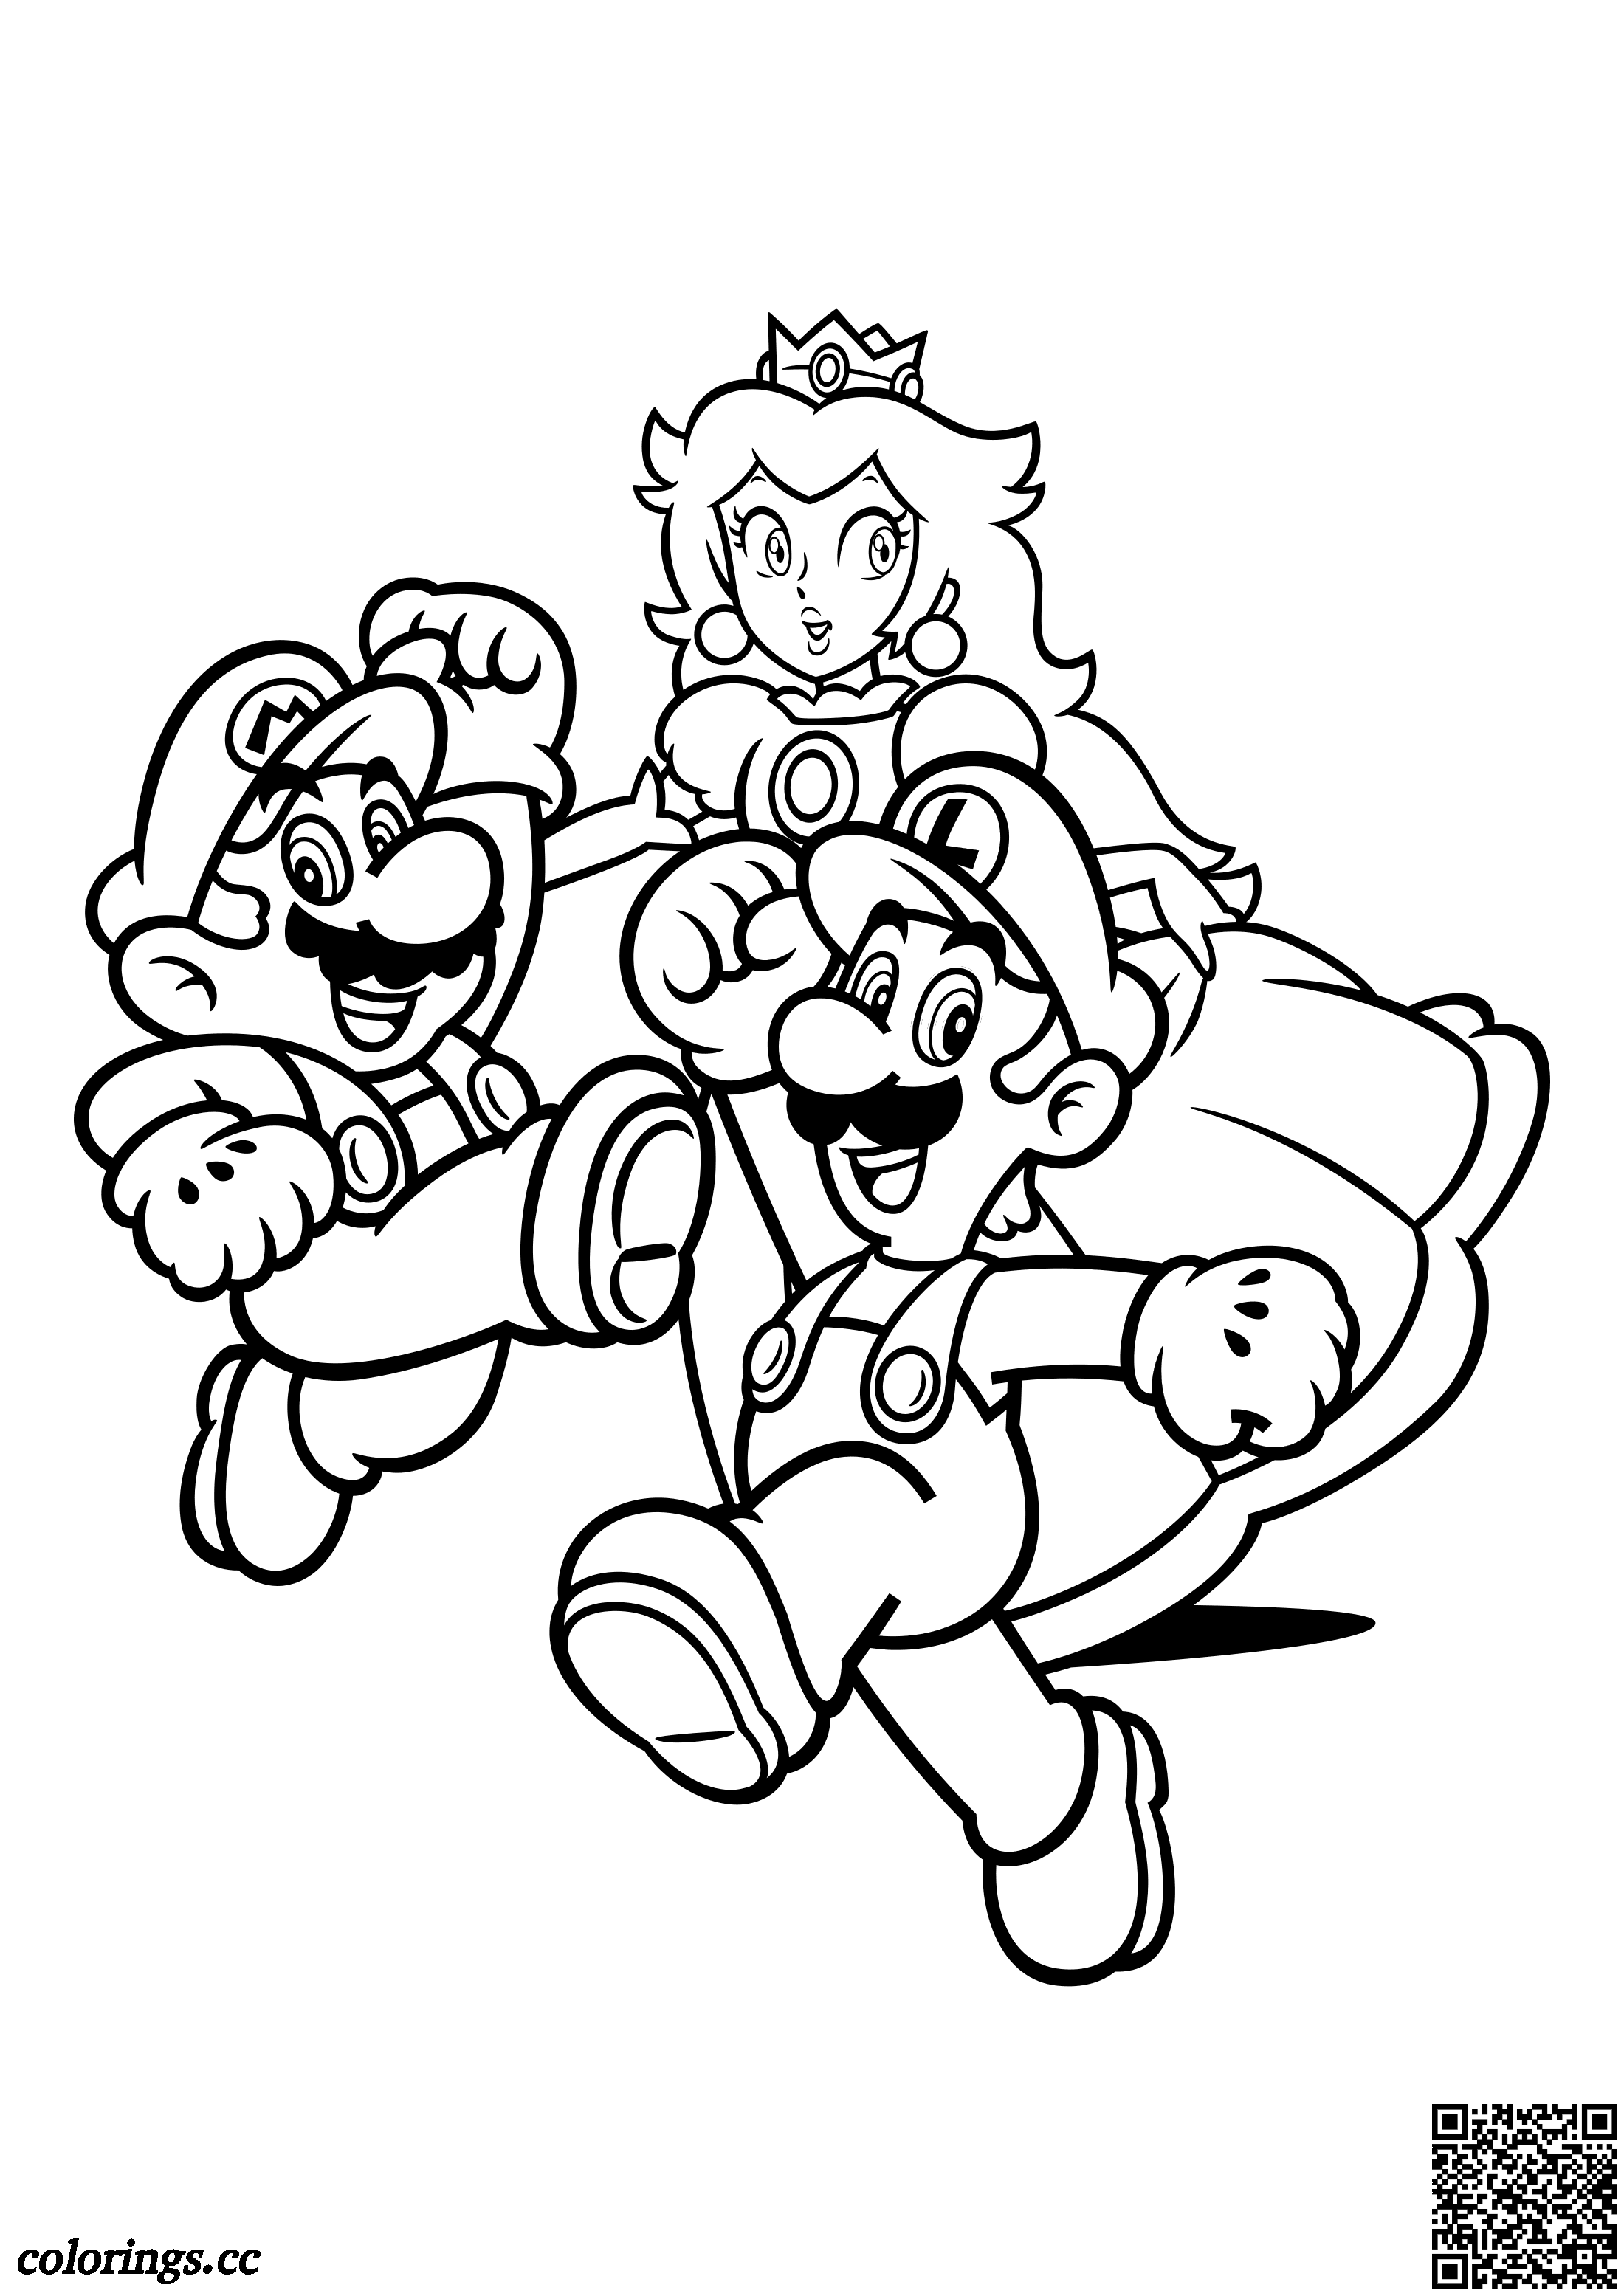 Mario, Luigi a princezna Peach omalovánky, super Mario omalovánky ...